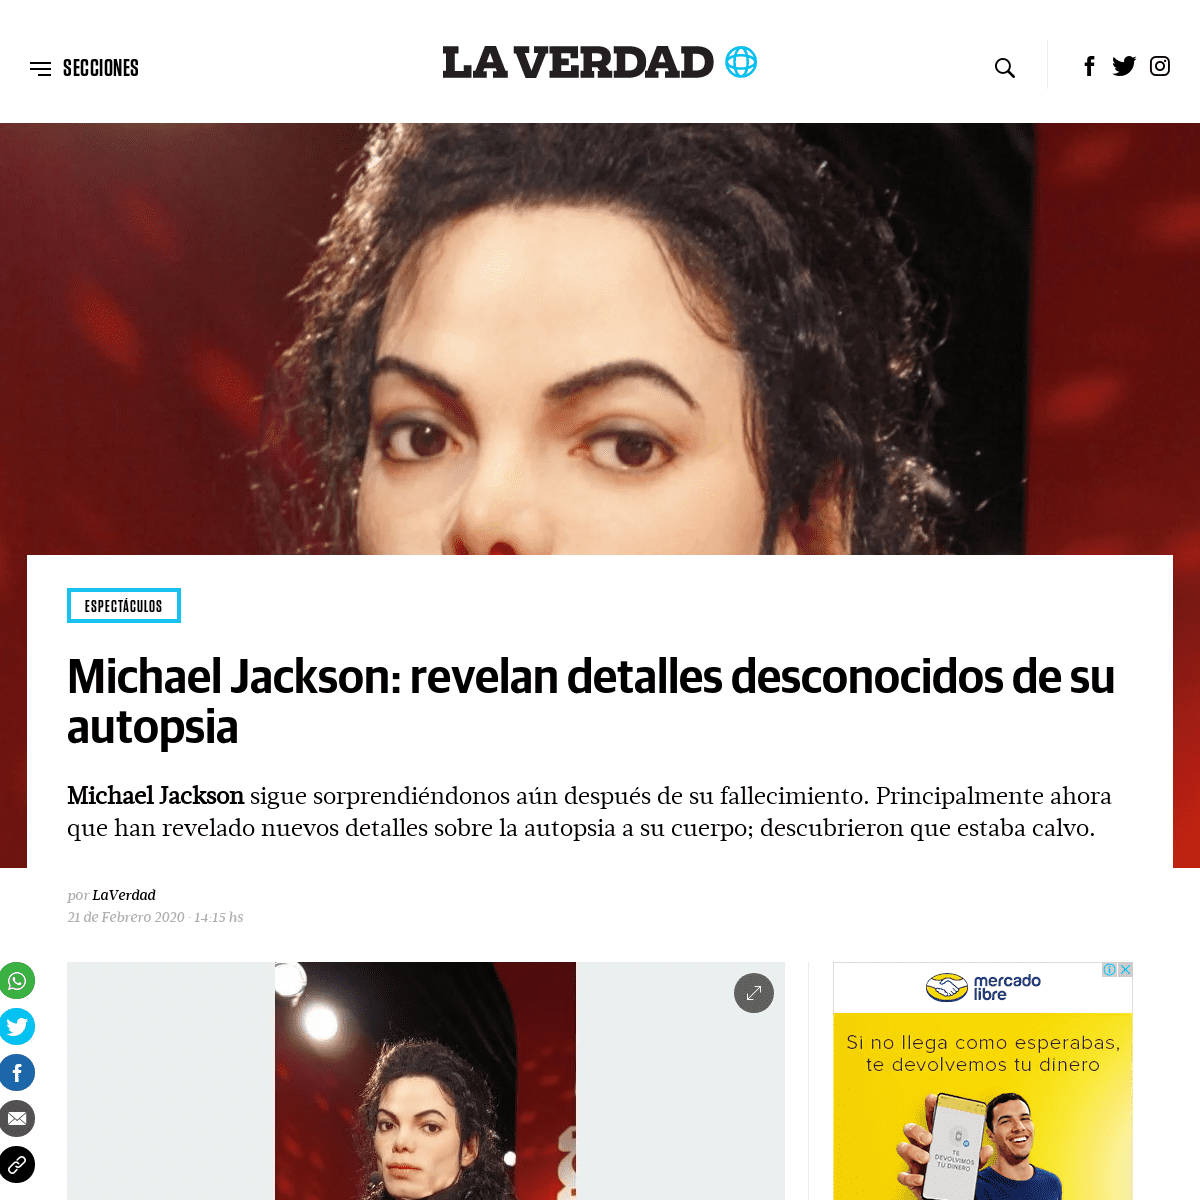 A complete backup of laverdadnoticias.com/espectaculos/Michael-Jackson-revelan-detalles-desconocidos-de-su-autopsia-20200221-011